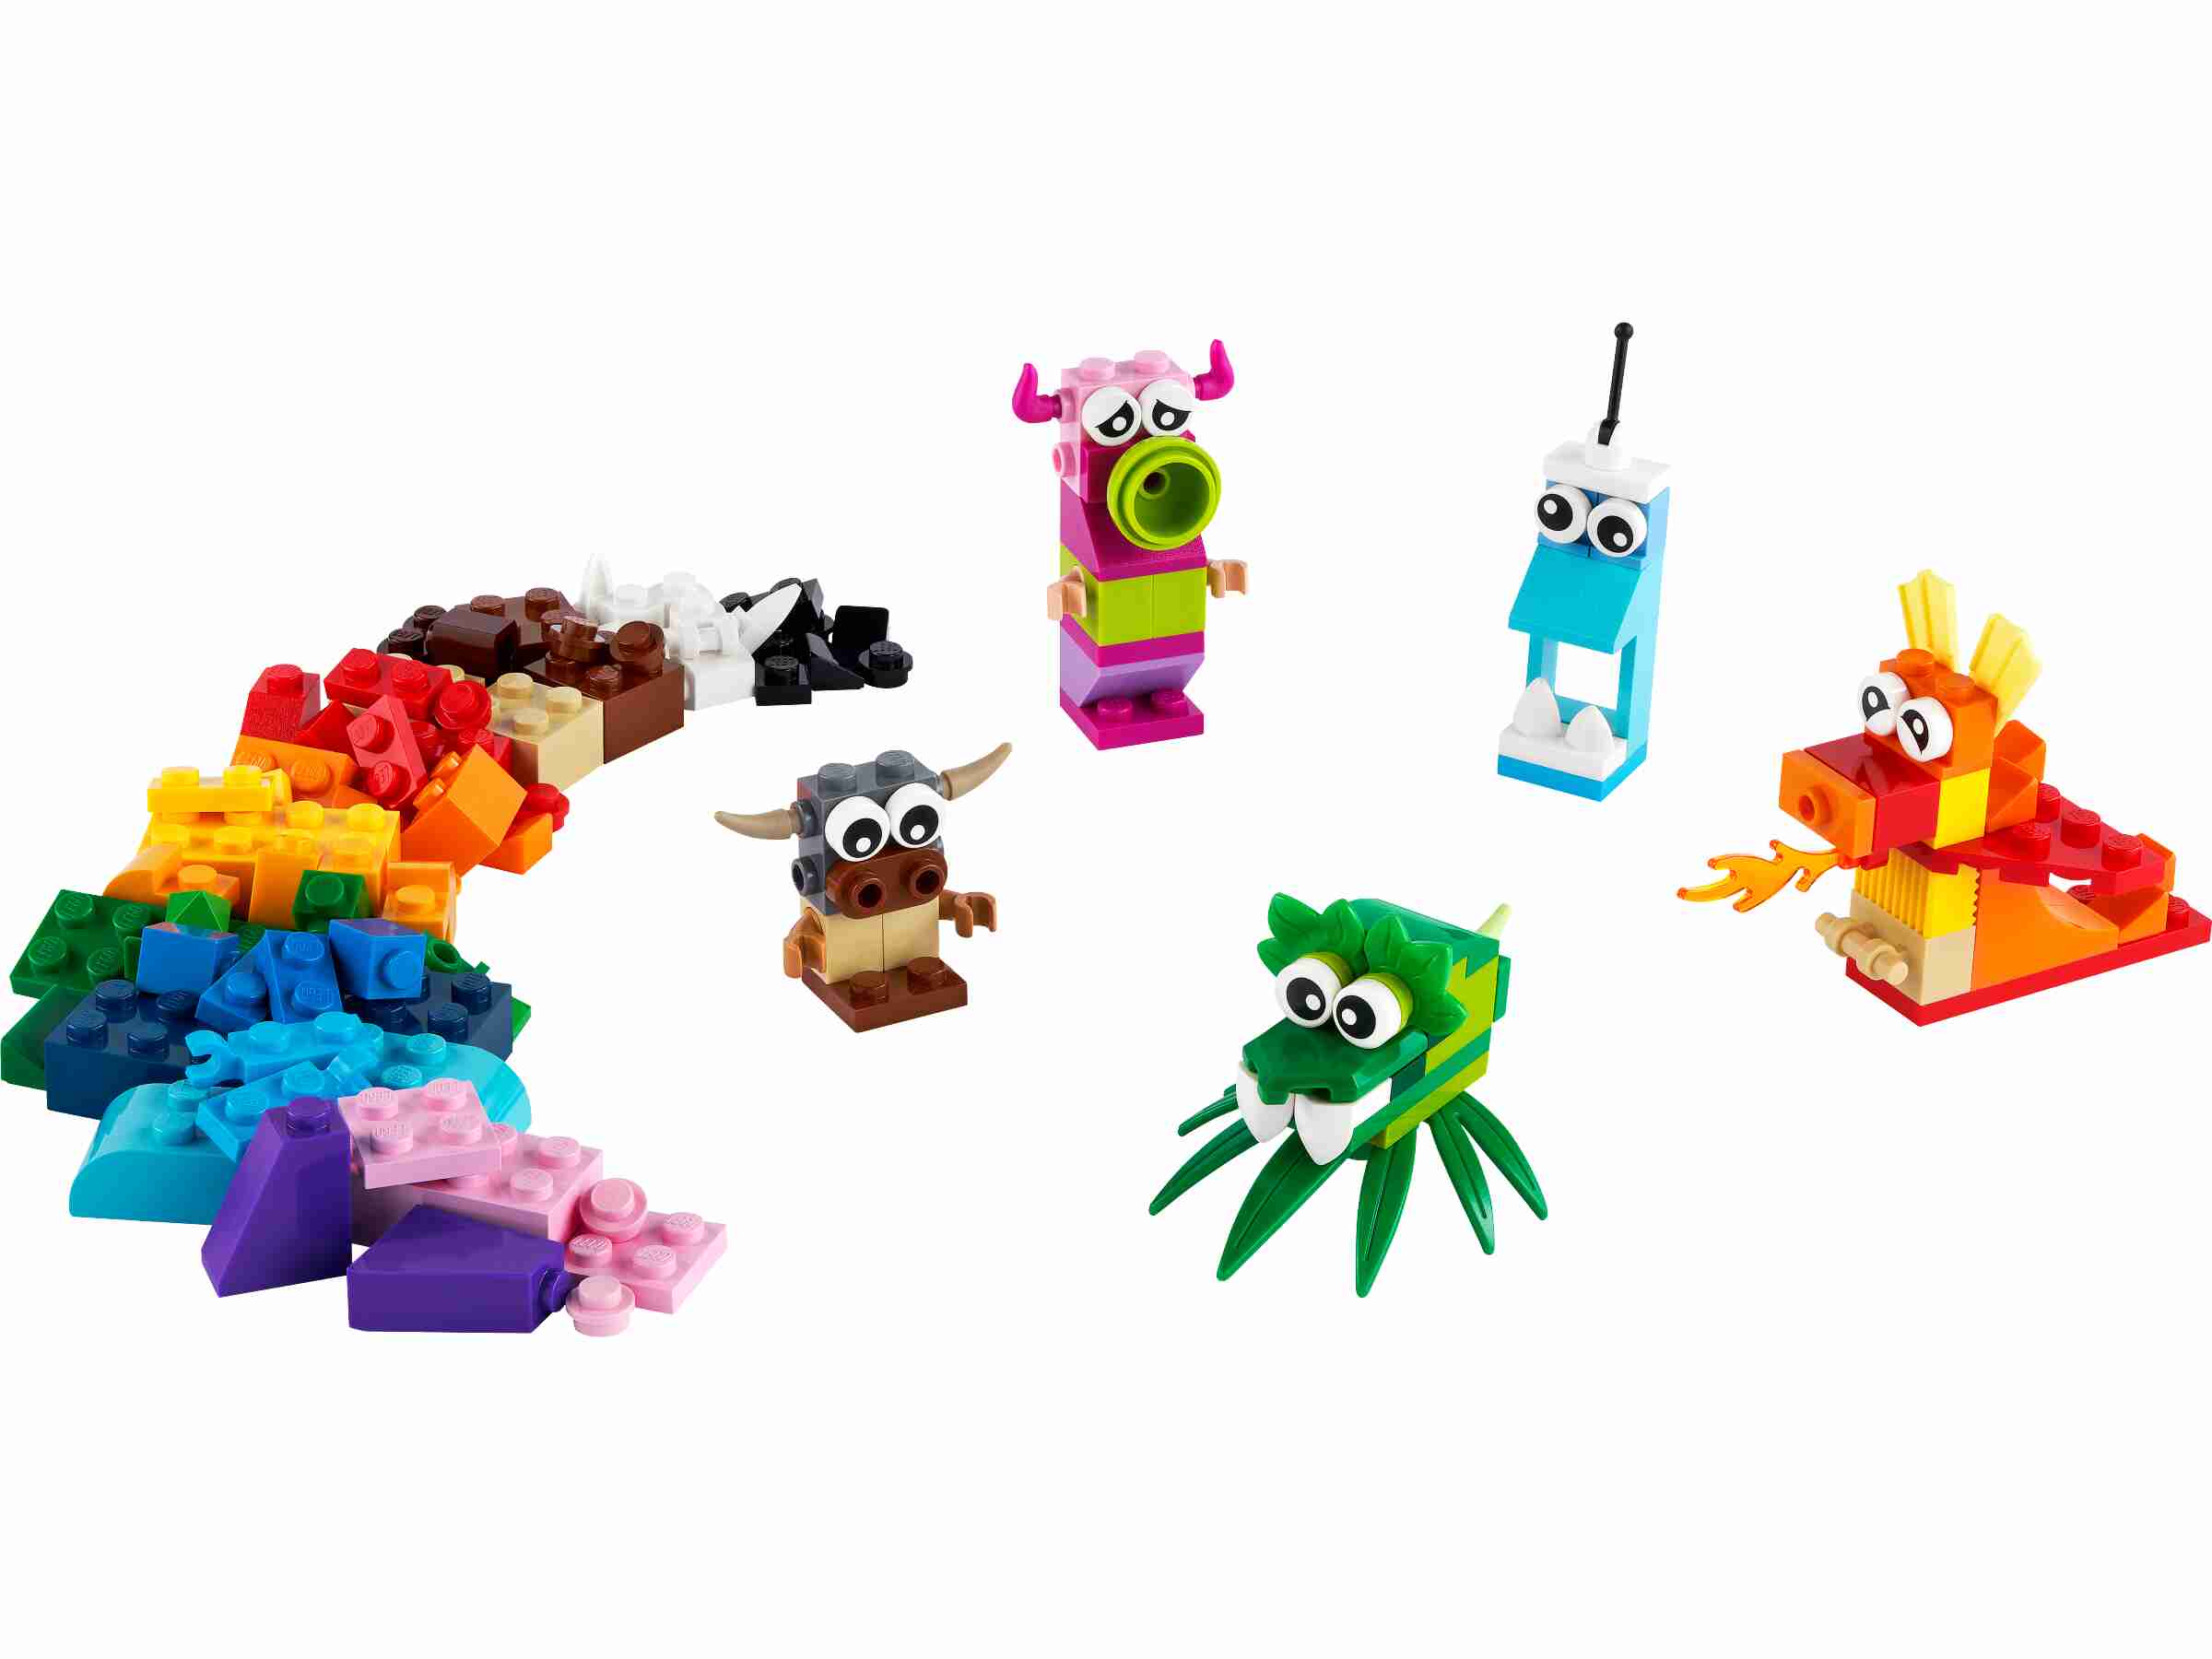 LEGO 11017 Classic Kreative Monster mit LEGO Steinen, Konstruktionsspielzeug